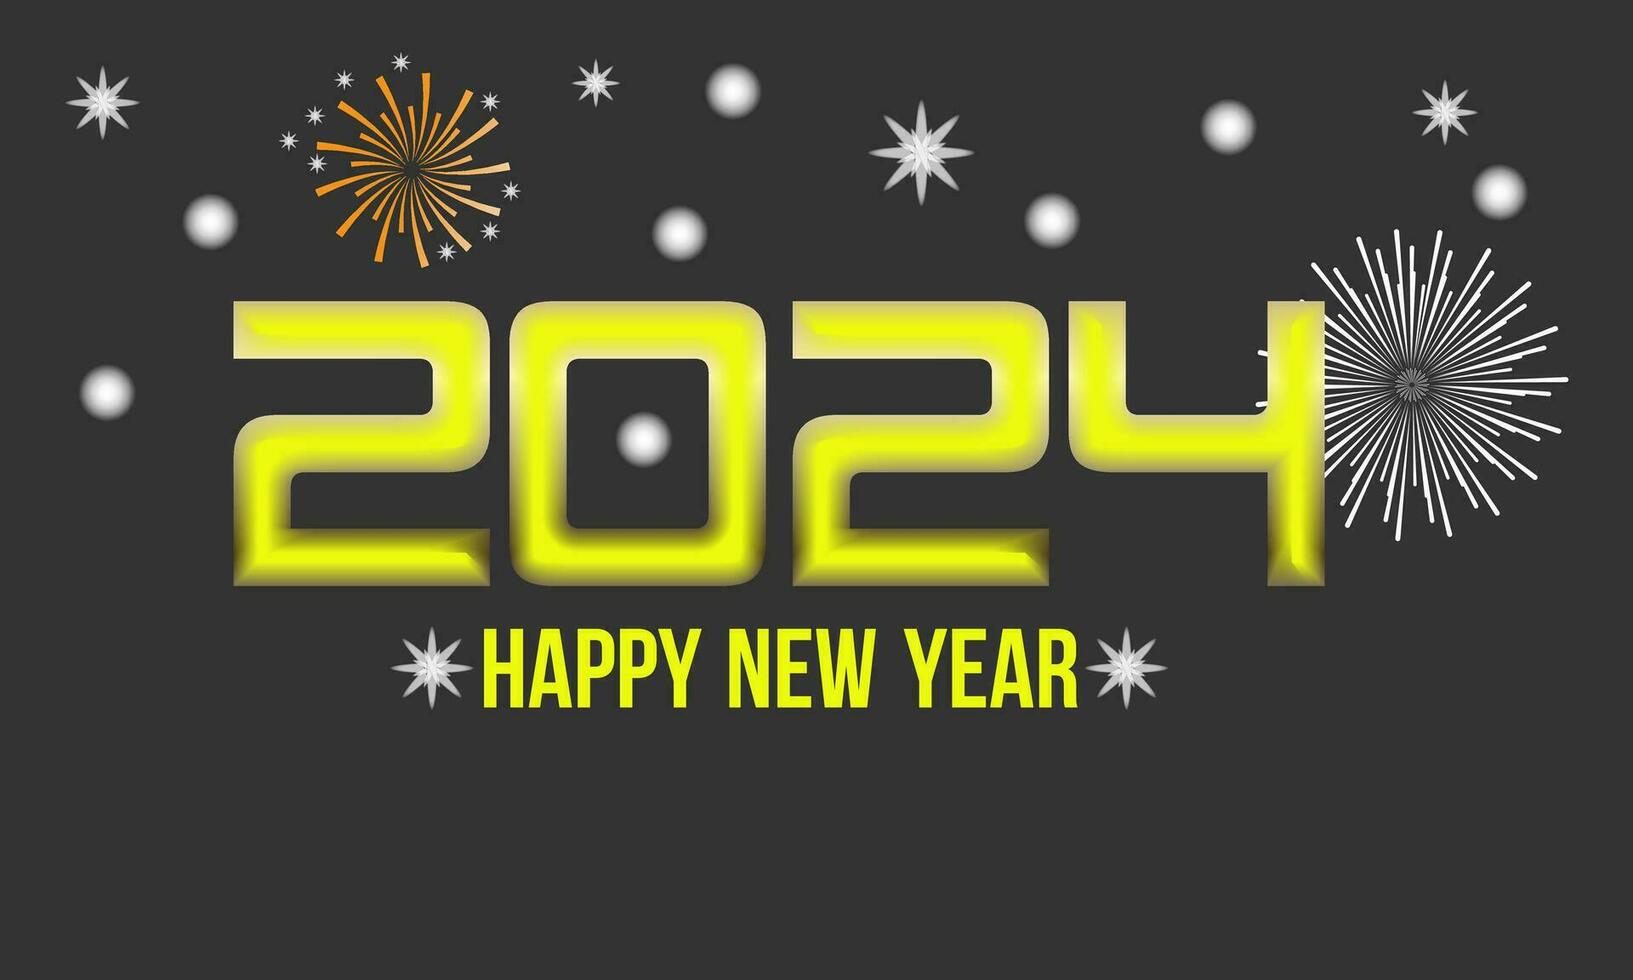 nieuw jaar vooravond 2024 countdown viering en partij concept met vuurwerk, Champagne, en feestelijk plezier. vakantie groet kaart, achtergrond, banier, kaart, poster ontwerp. vector